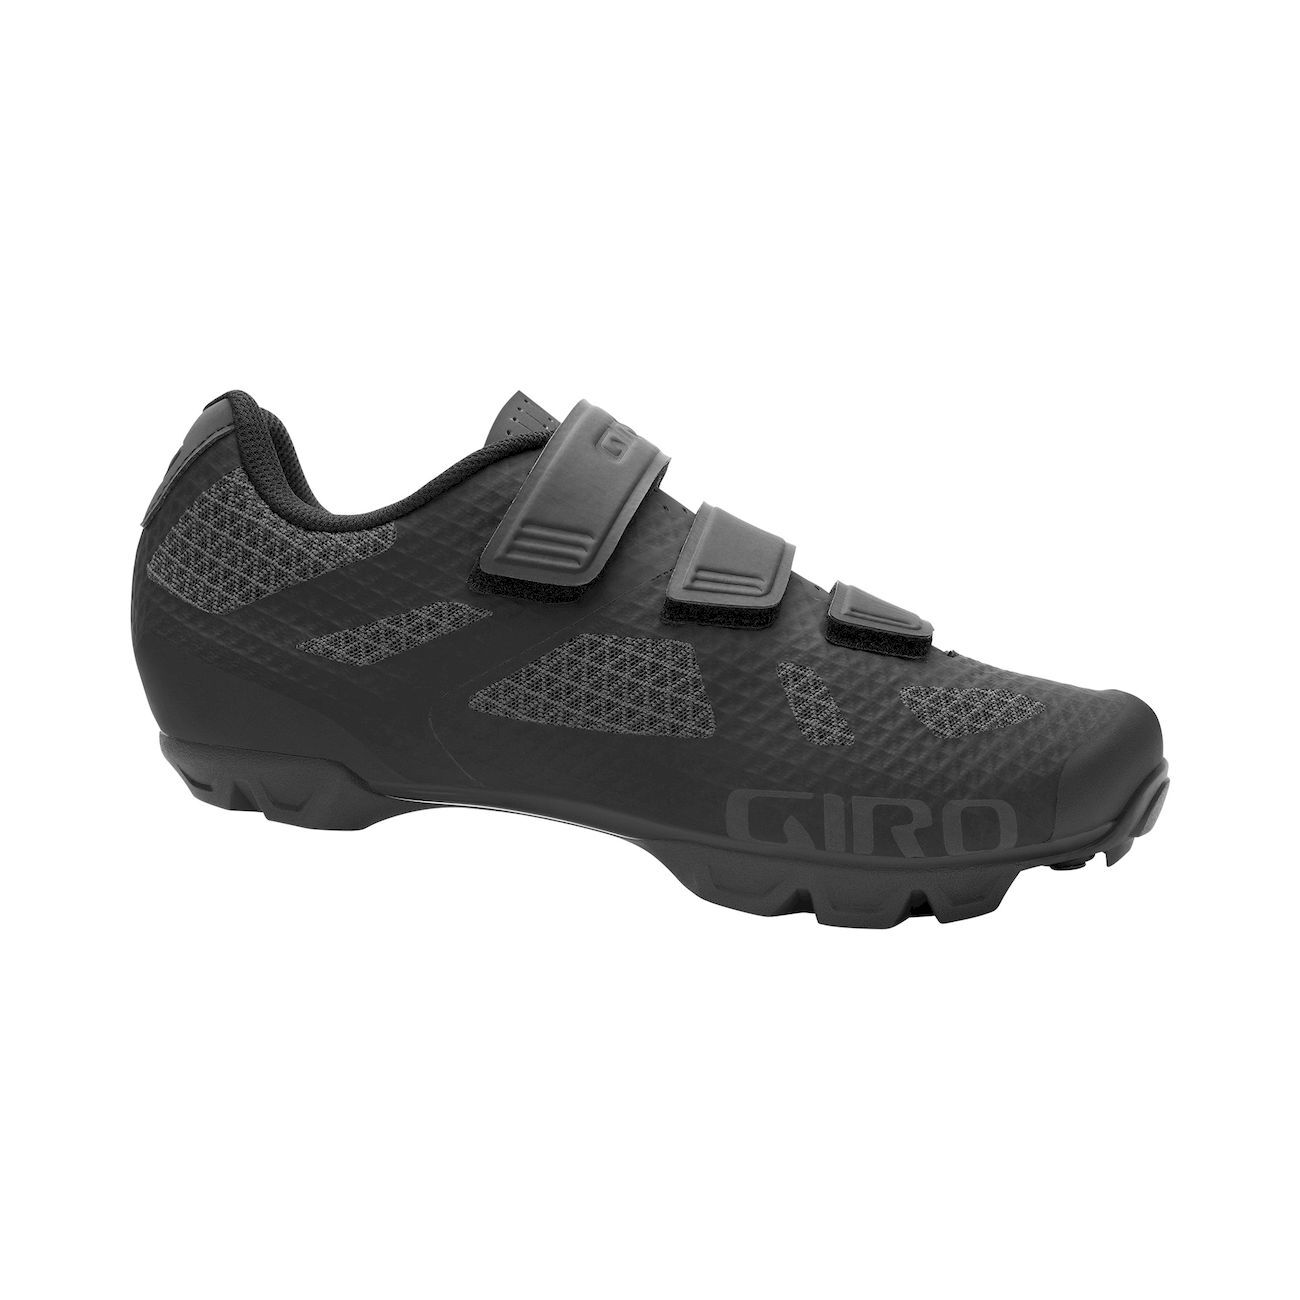 Giro Ranger - Mountain Bike shoes - Men's